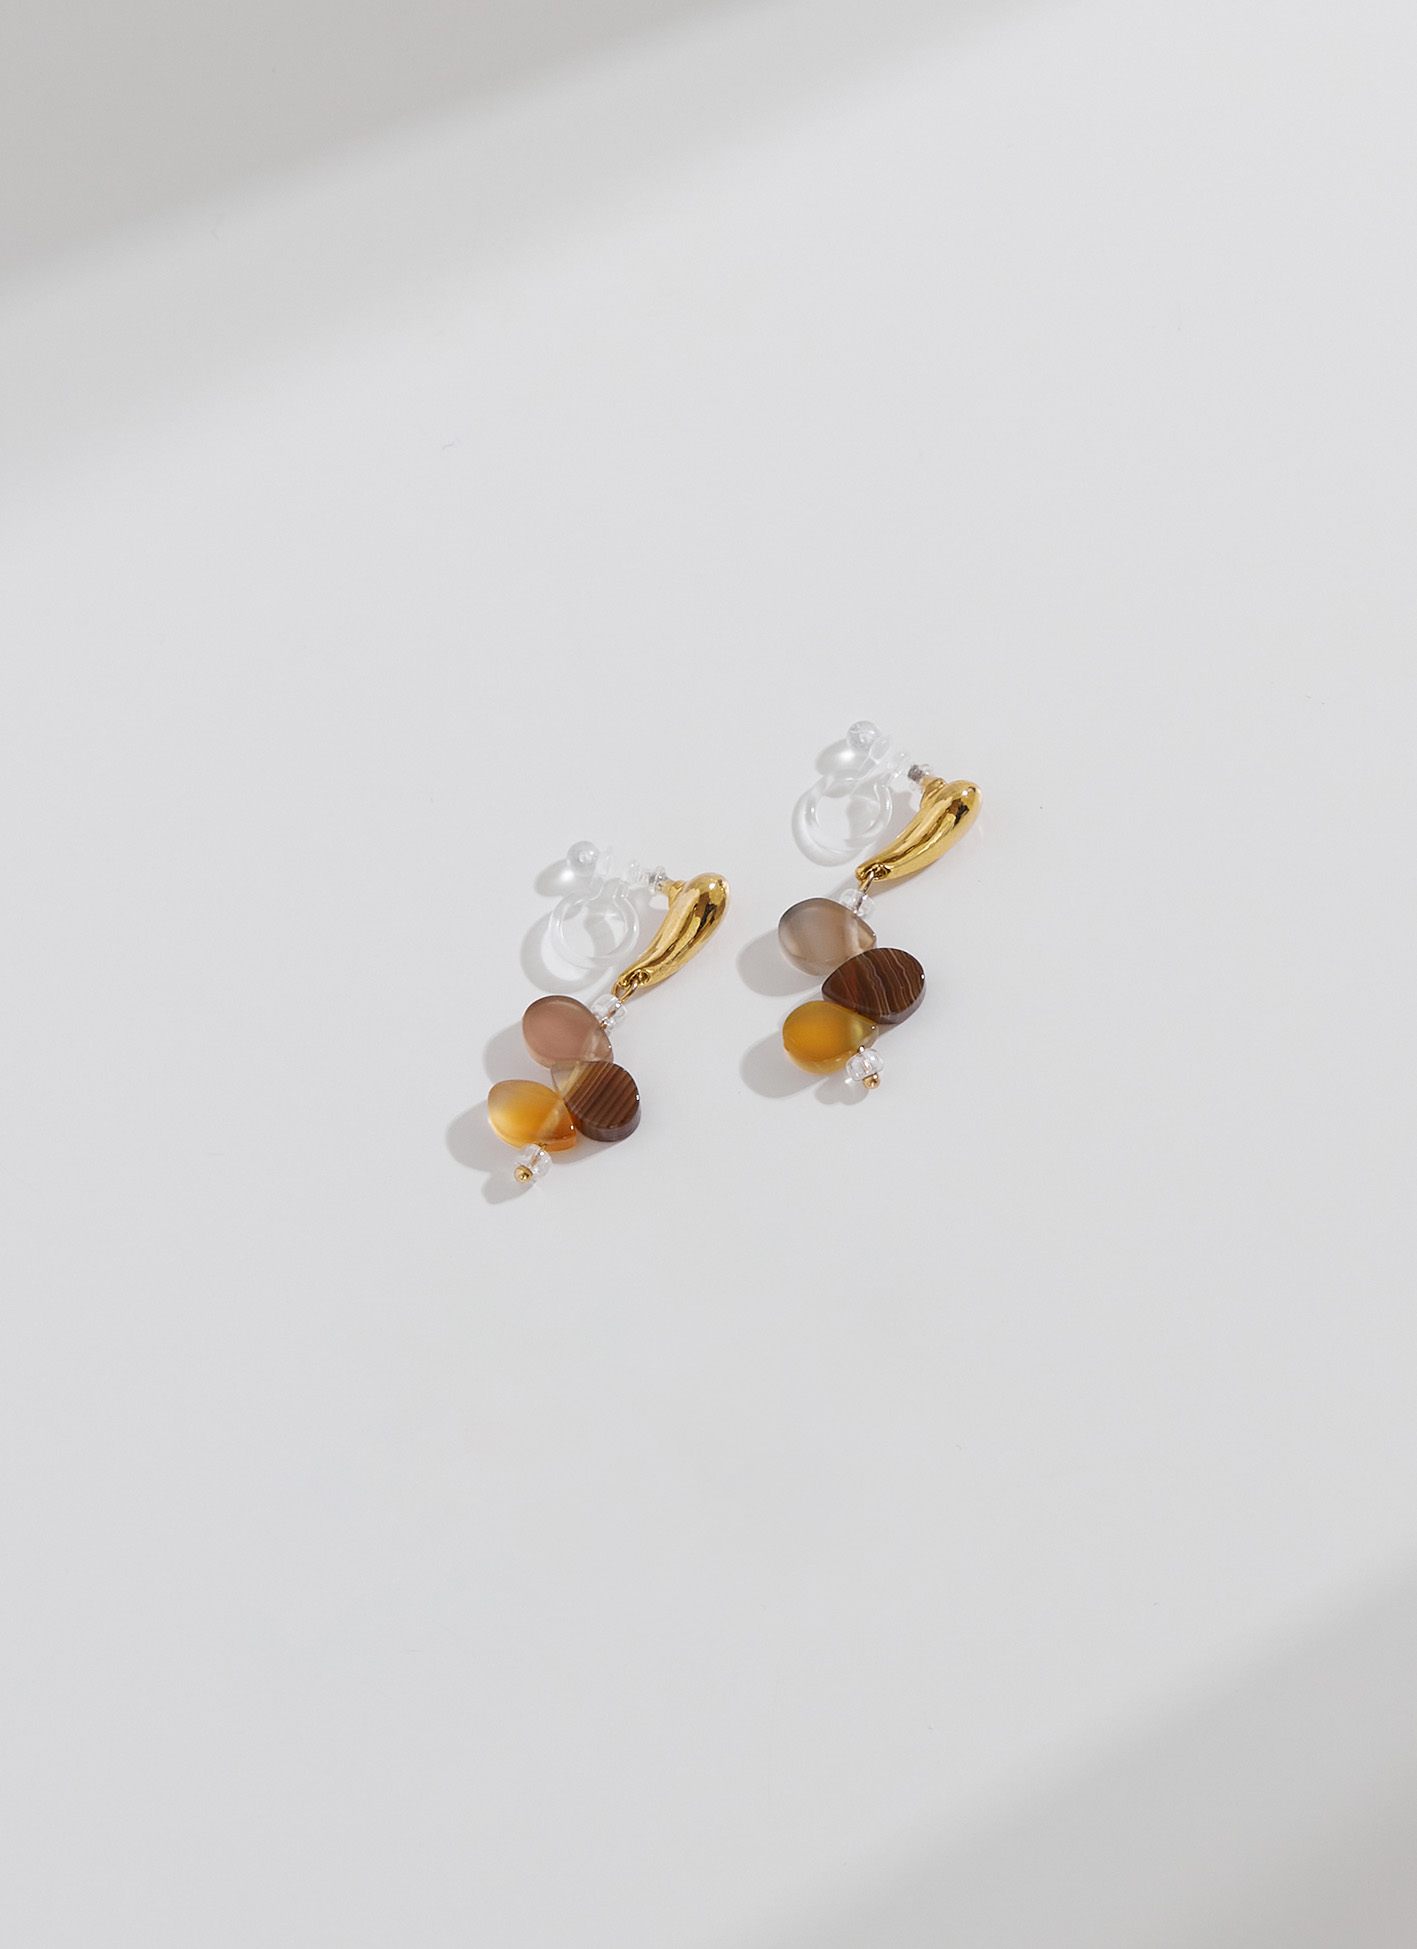 Eco安珂,韓國飾品,韓國耳環,耳針式耳環,矽膠夾耳環,透明耳夾耳環,彩石耳環